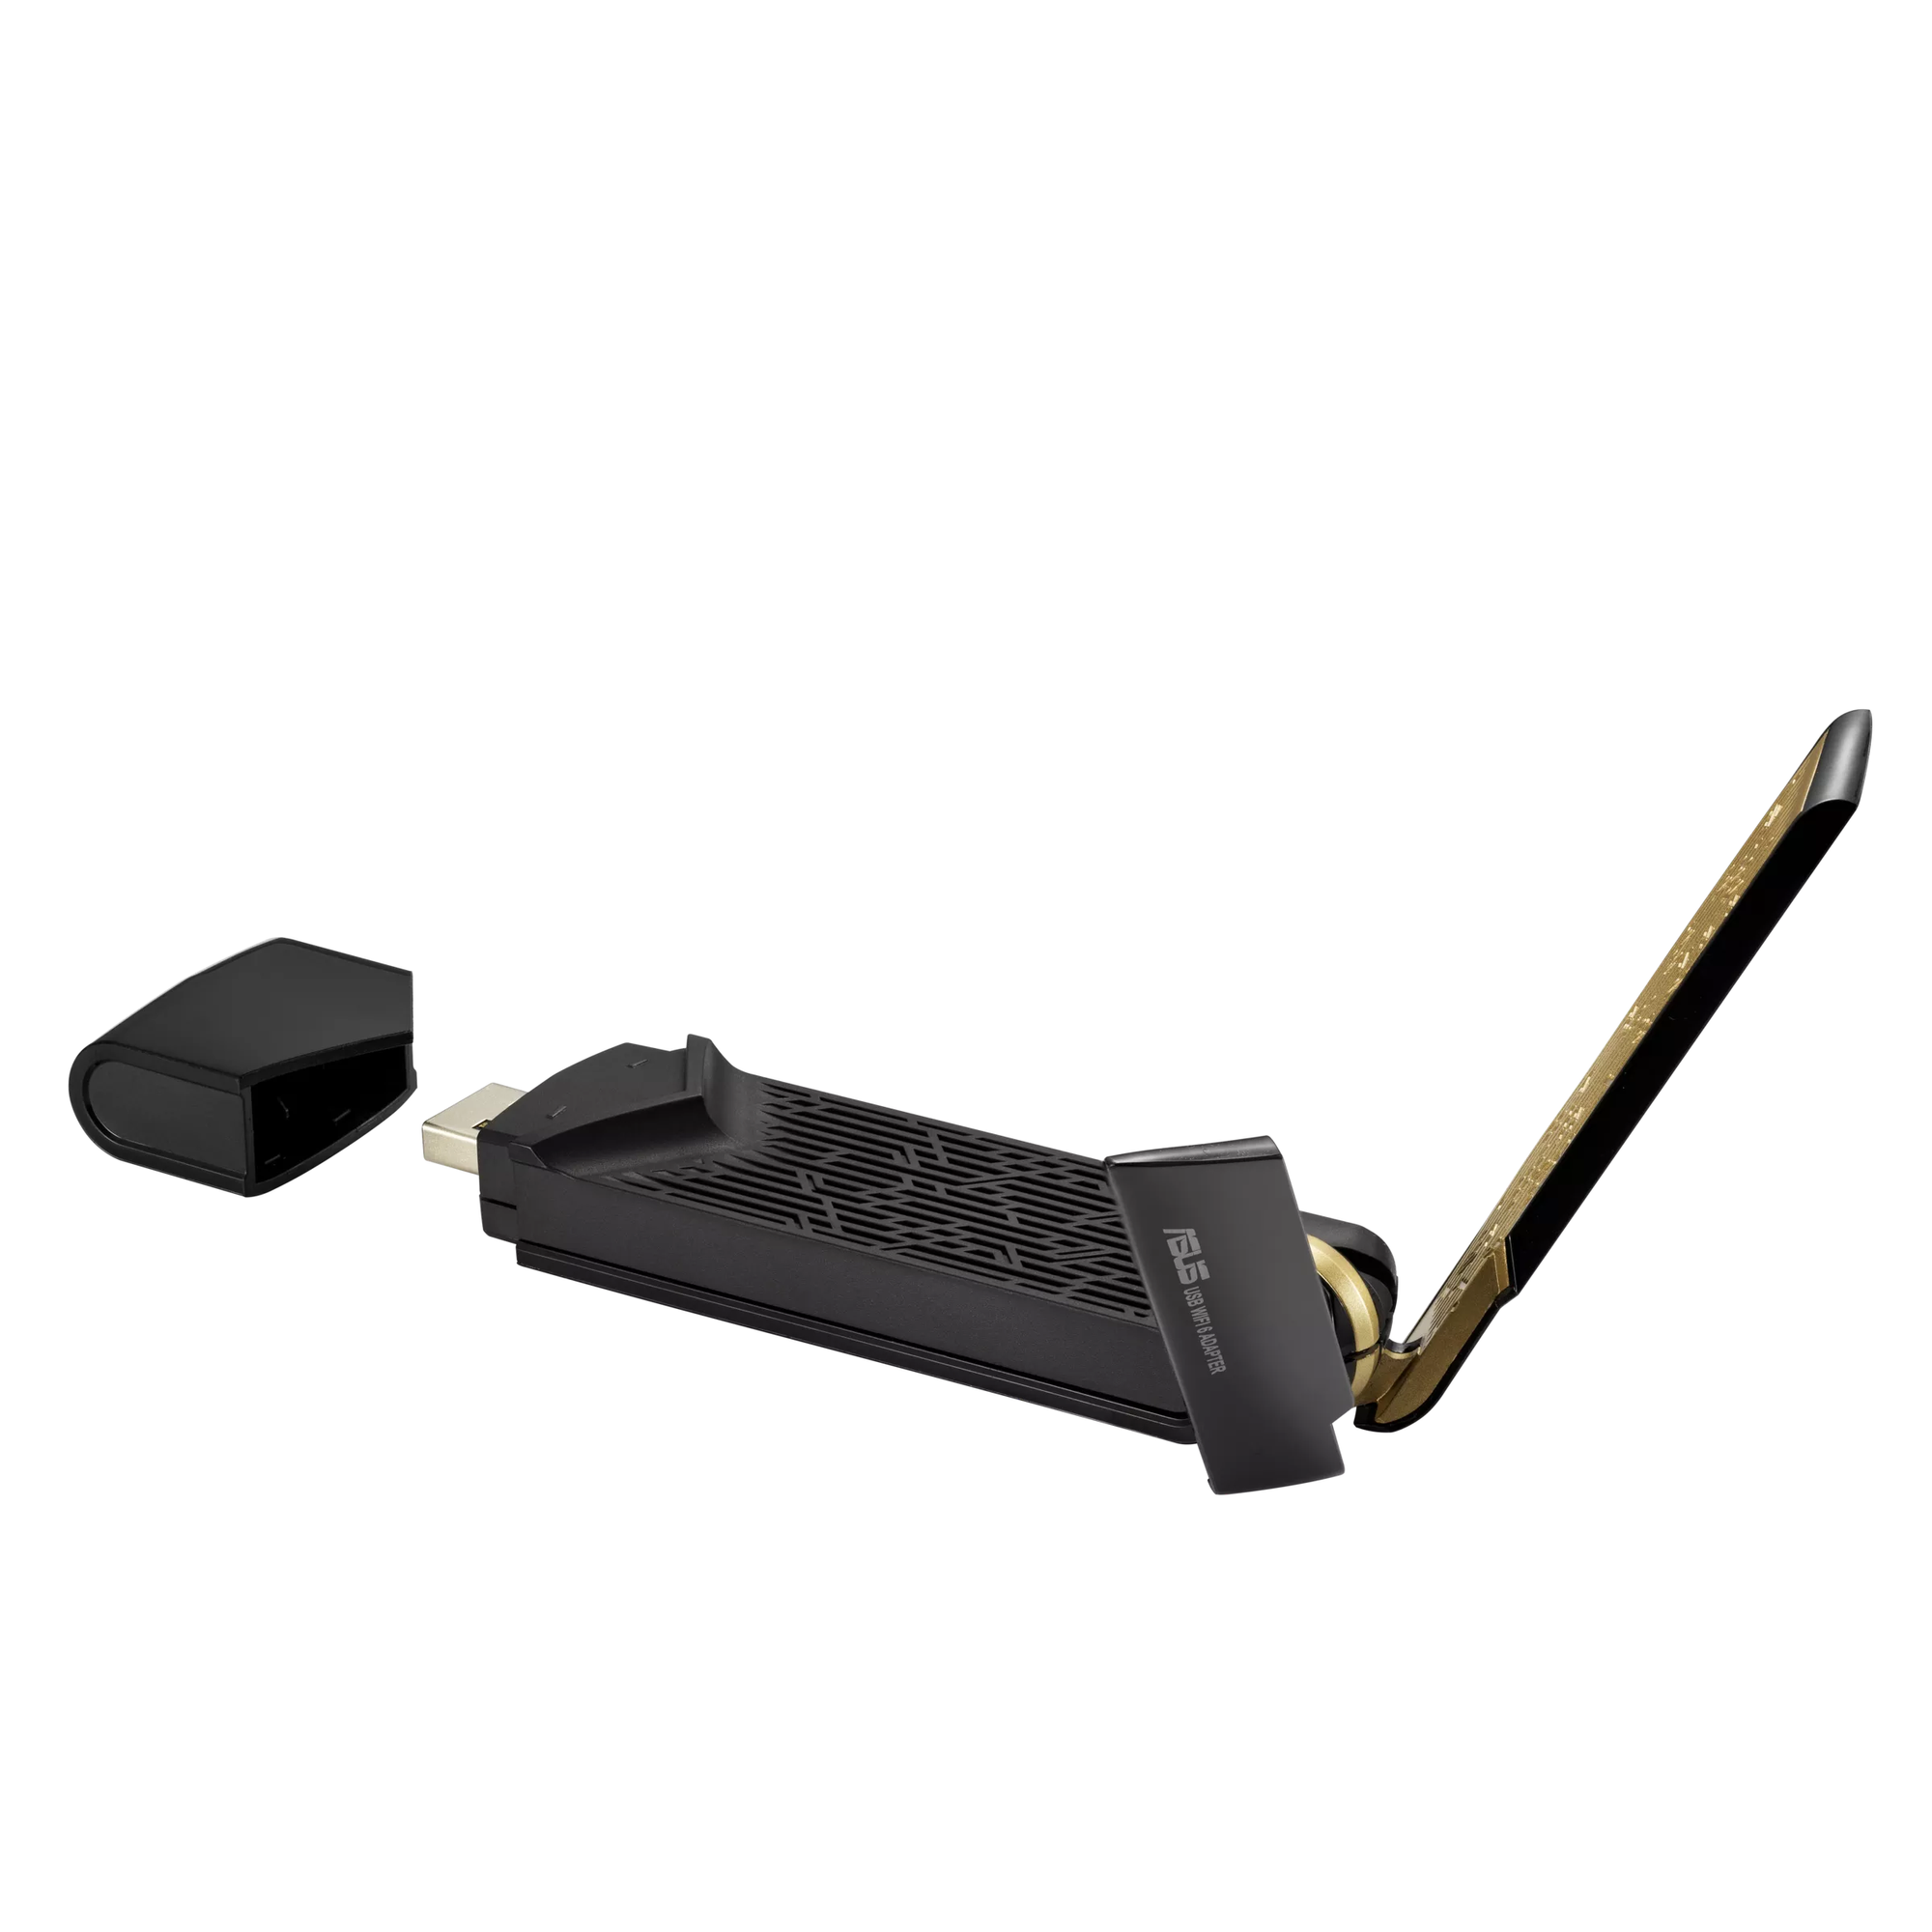 ASUS USB-AX56 Dual-Band AX1800 USB-WLAN-Adapter thumbnail 5